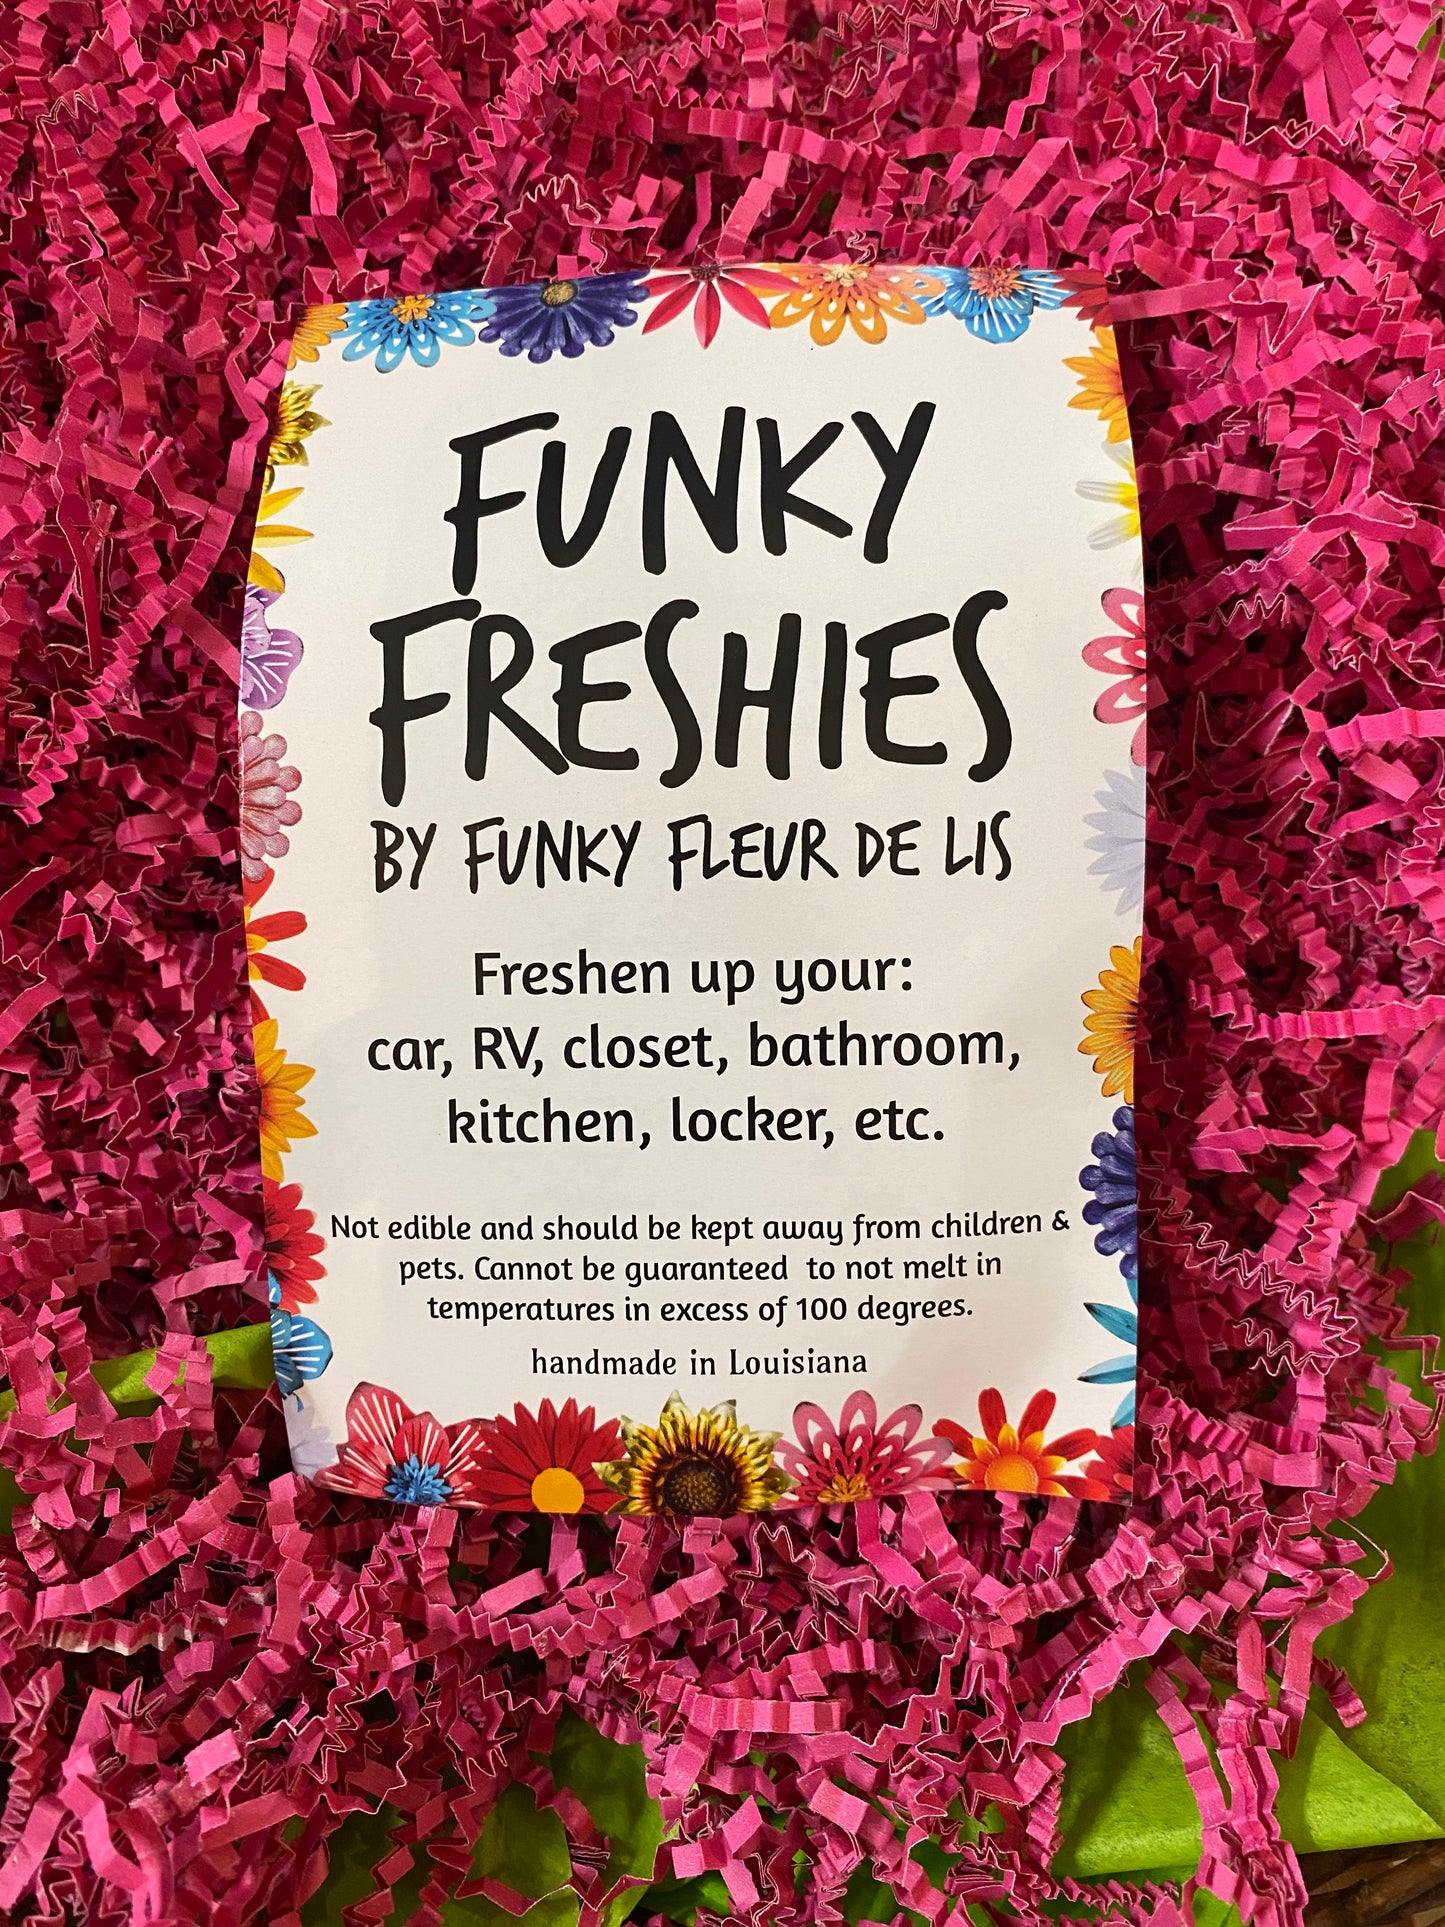 Funky Freshies